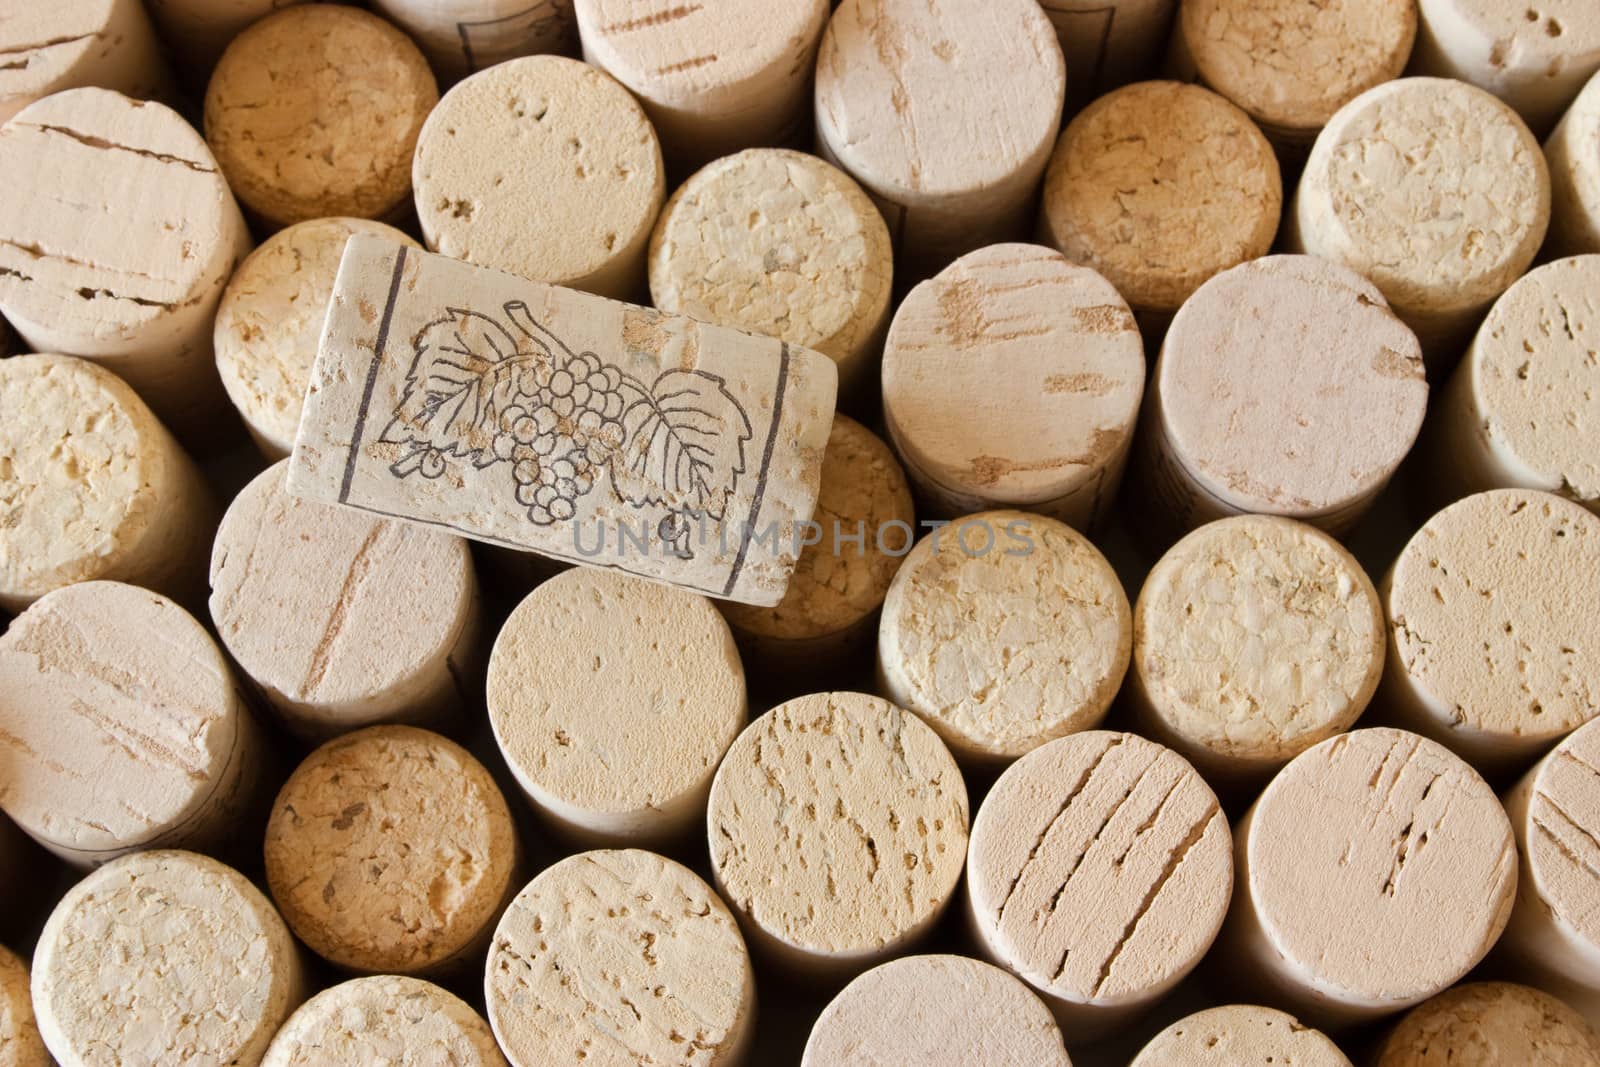 Wine cork background